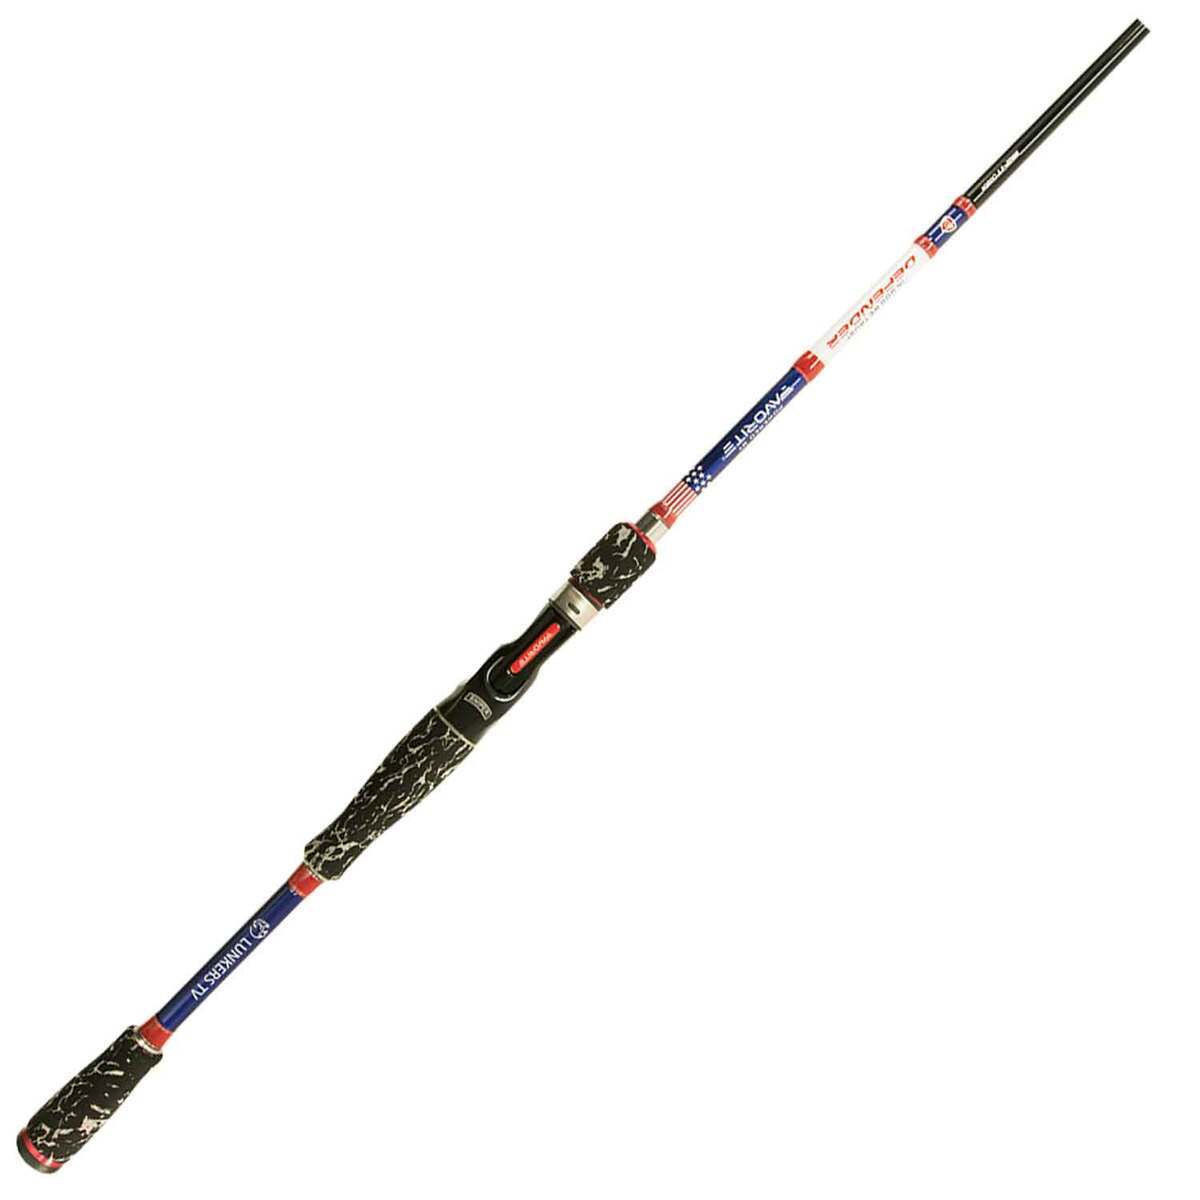 https://www.sportsmans.com/medias/favorite-fishing-usa-lunkers-tv-defender-casting-rod-past-season-model-7ft-3in-medium-heavy-power-fast-action-1-pc-1566059-1.jpg?context=bWFzdGVyfGltYWdlc3wyODMzMHxpbWFnZS9qcGVnfGFEa3dMMmd4WWk4eE1UTXpOREl3TXpjMk9EZzJNaTh4TWpBd0xXTnZiblpsY25OcGIyNUdiM0p0WVhSZlltRnpaUzFqYjI1MlpYSnphVzl1Um05eWJXRjBYM050ZHkweE5UWTJNRFU1TFRFdWFuQm58YjQ1YTJkNTBhZjhiNTYwZWE0MGYzZjI2YWJjMGVmZDliYjgyMjM0ZDhkOTQ0ZGU4OWNlMzRiNTQyYTZkZThiYw